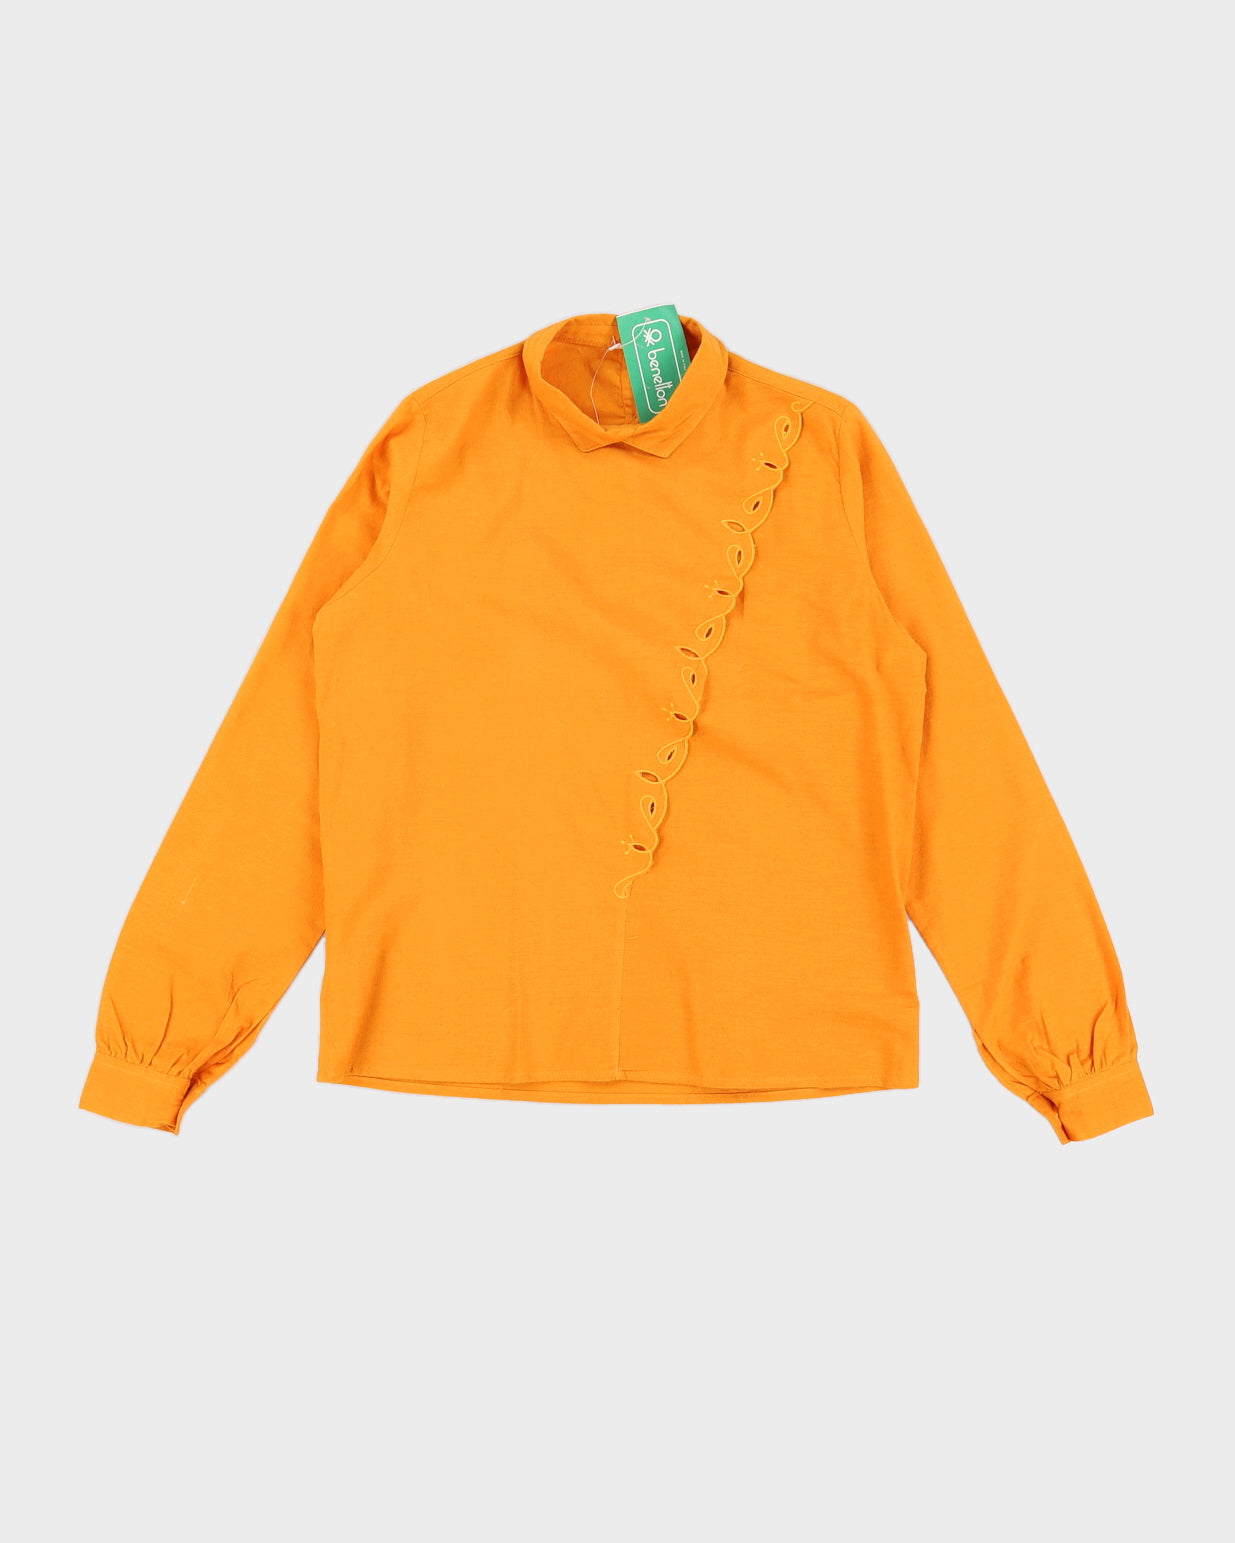 Vintage 70s Benetton Women's Orange Blouse - M/L